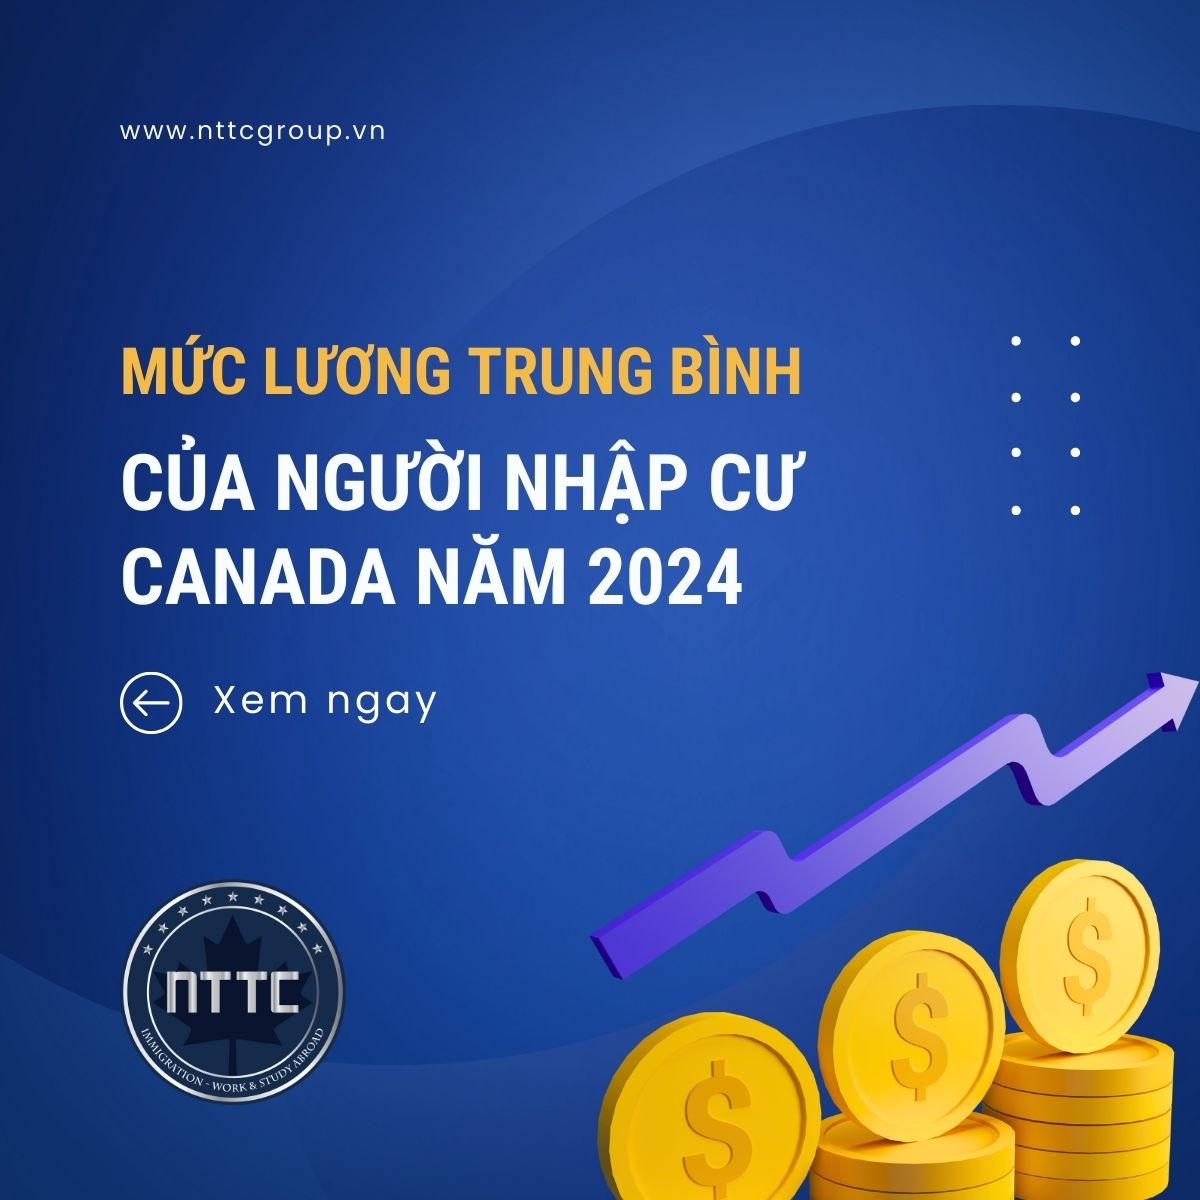 Mức lương trung bình của người nhập cư Canada năm 2024